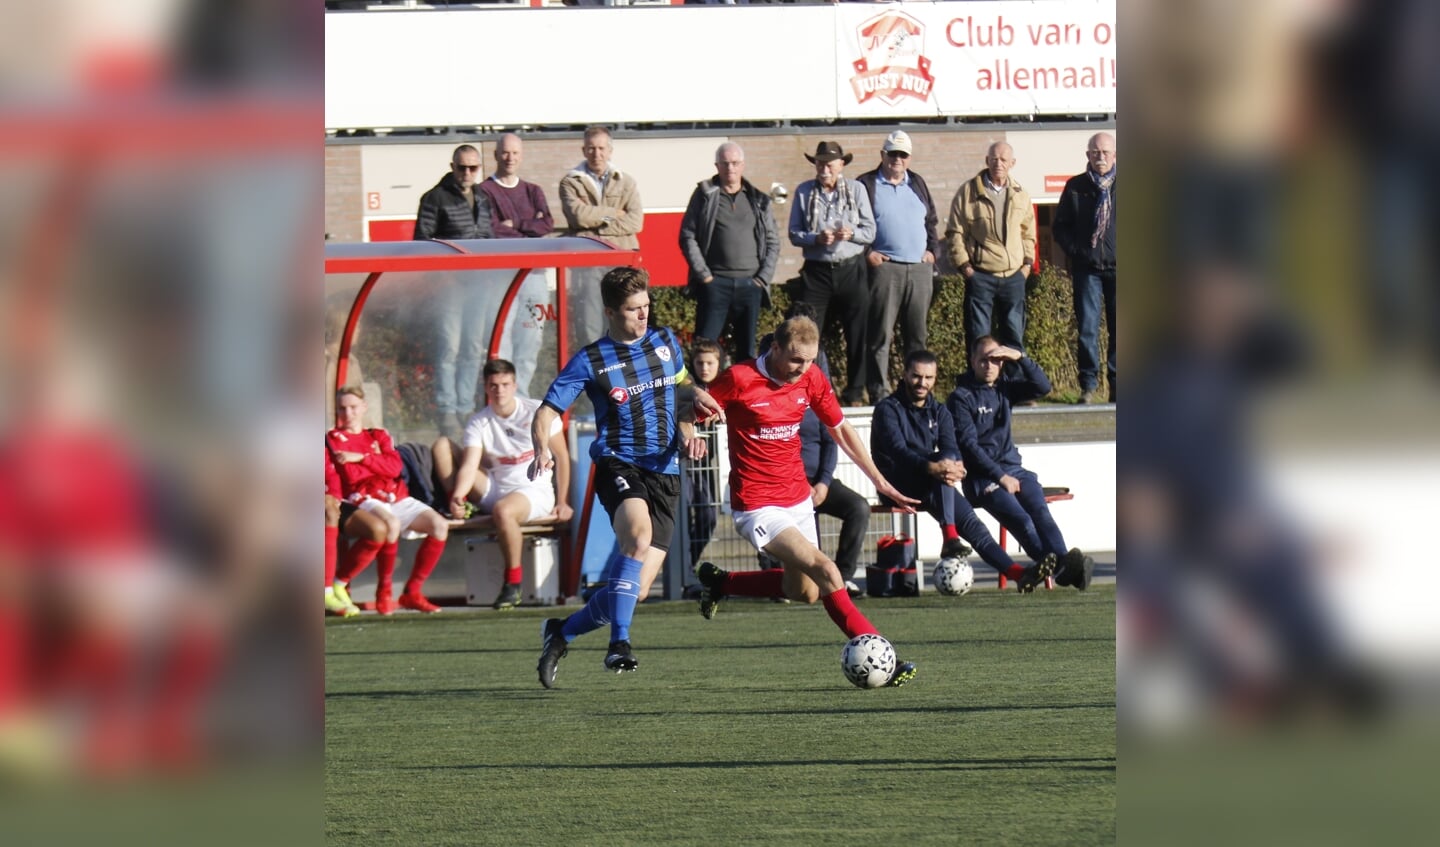 JVC'er Jordi Toonen stoomt op in de wedstrijd tegen Excelsior Zetten.